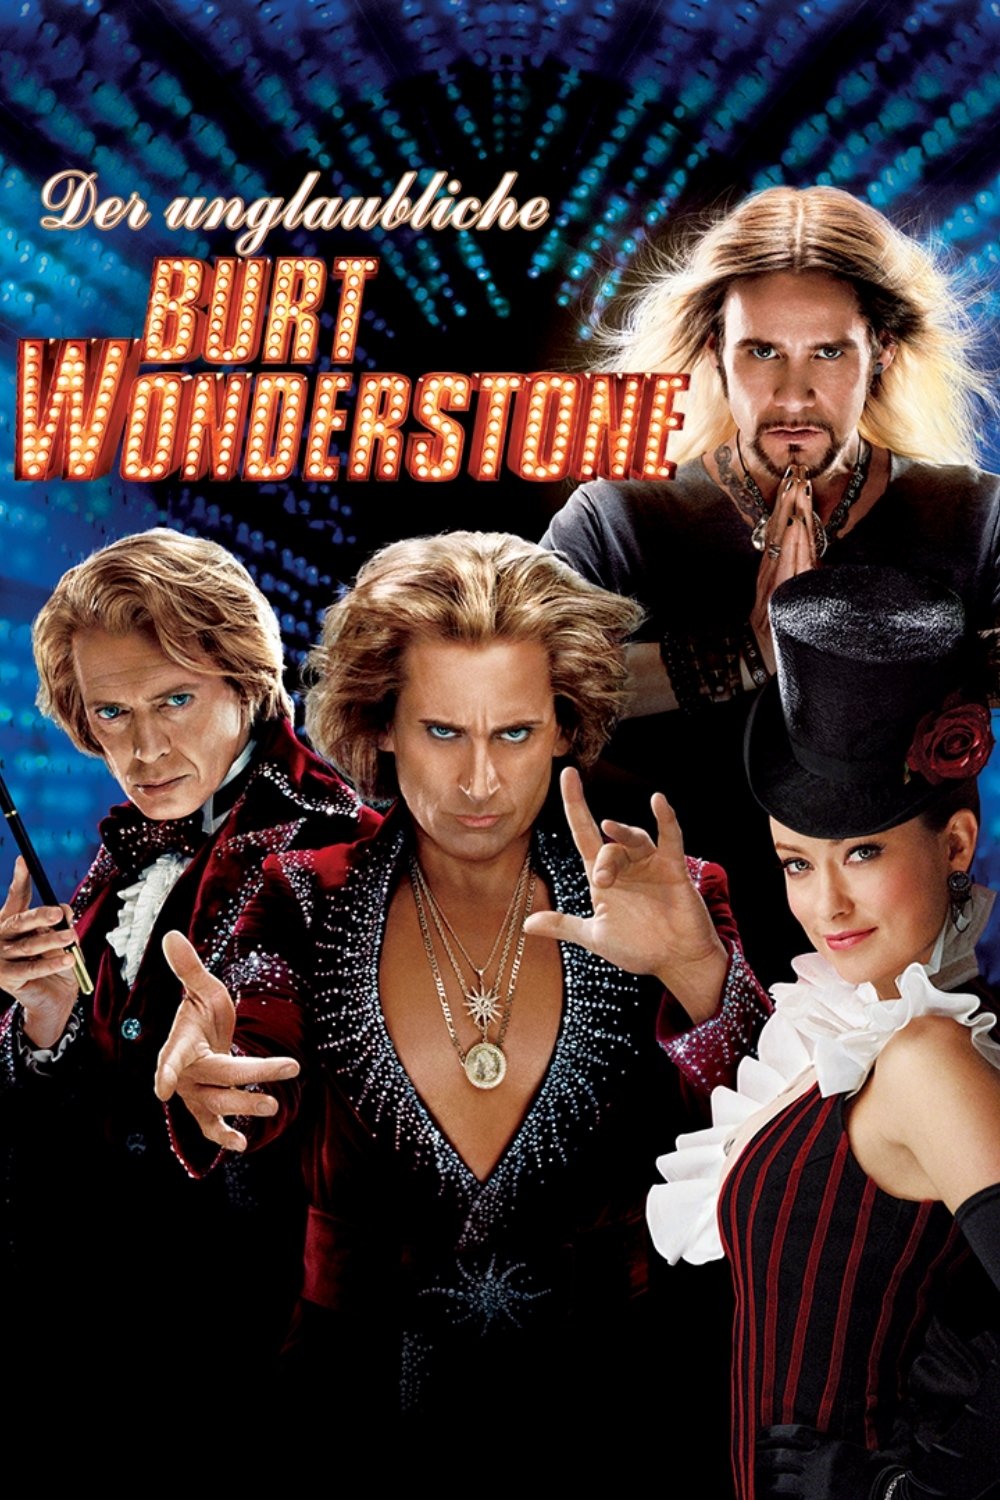 Plakat von "Der unglaubliche Burt Wonderstone"